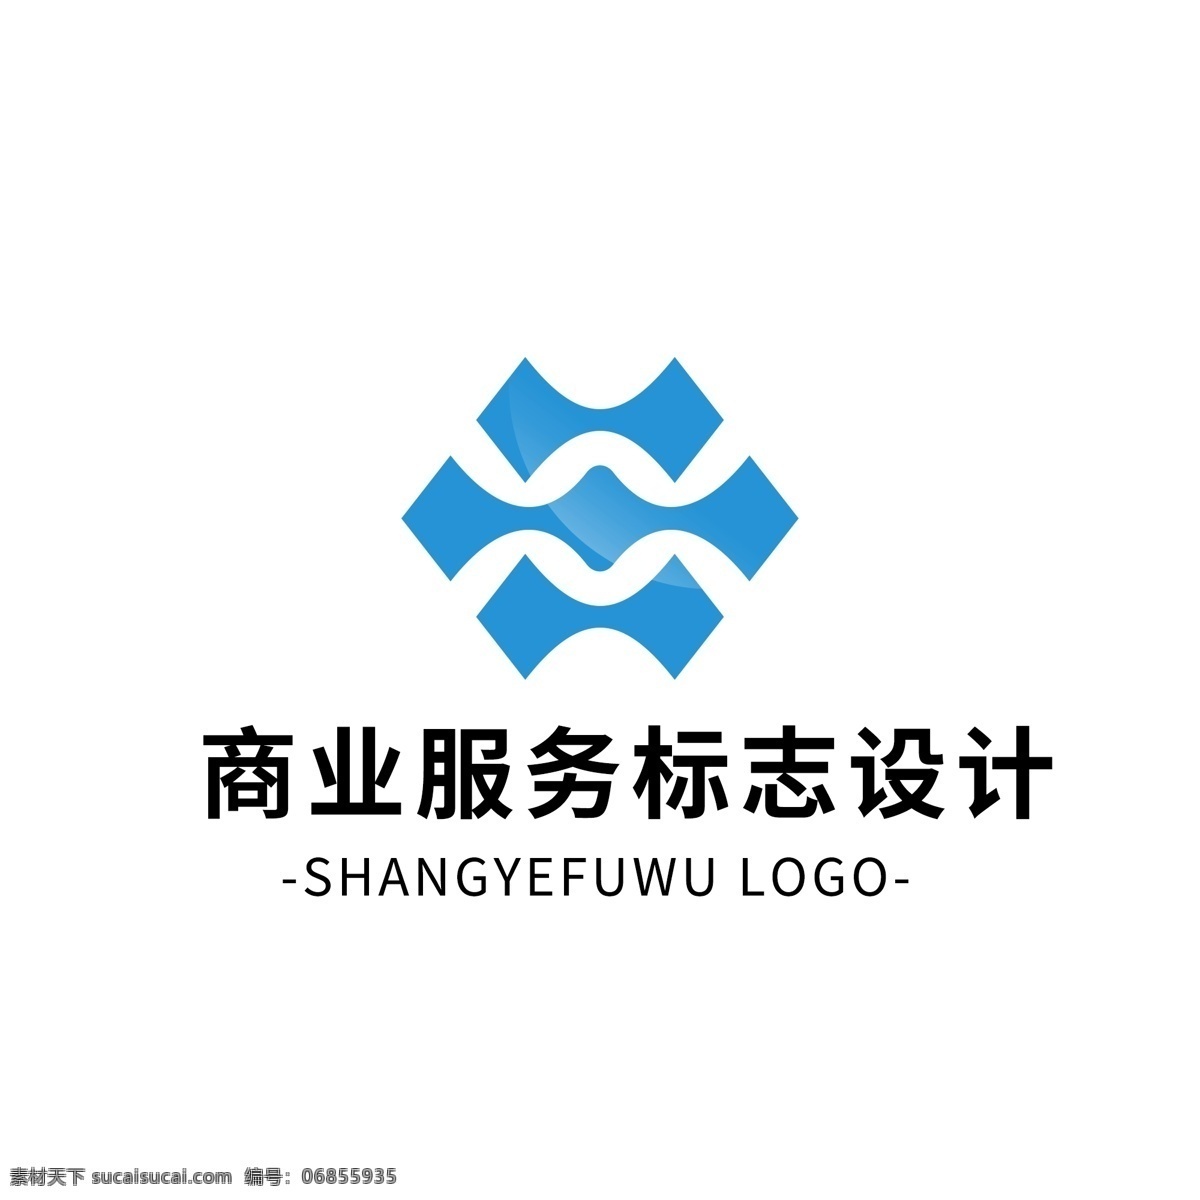 简约 大气 创意 商业服务 logo 标志设计 蓝色 矢量 图形 商业